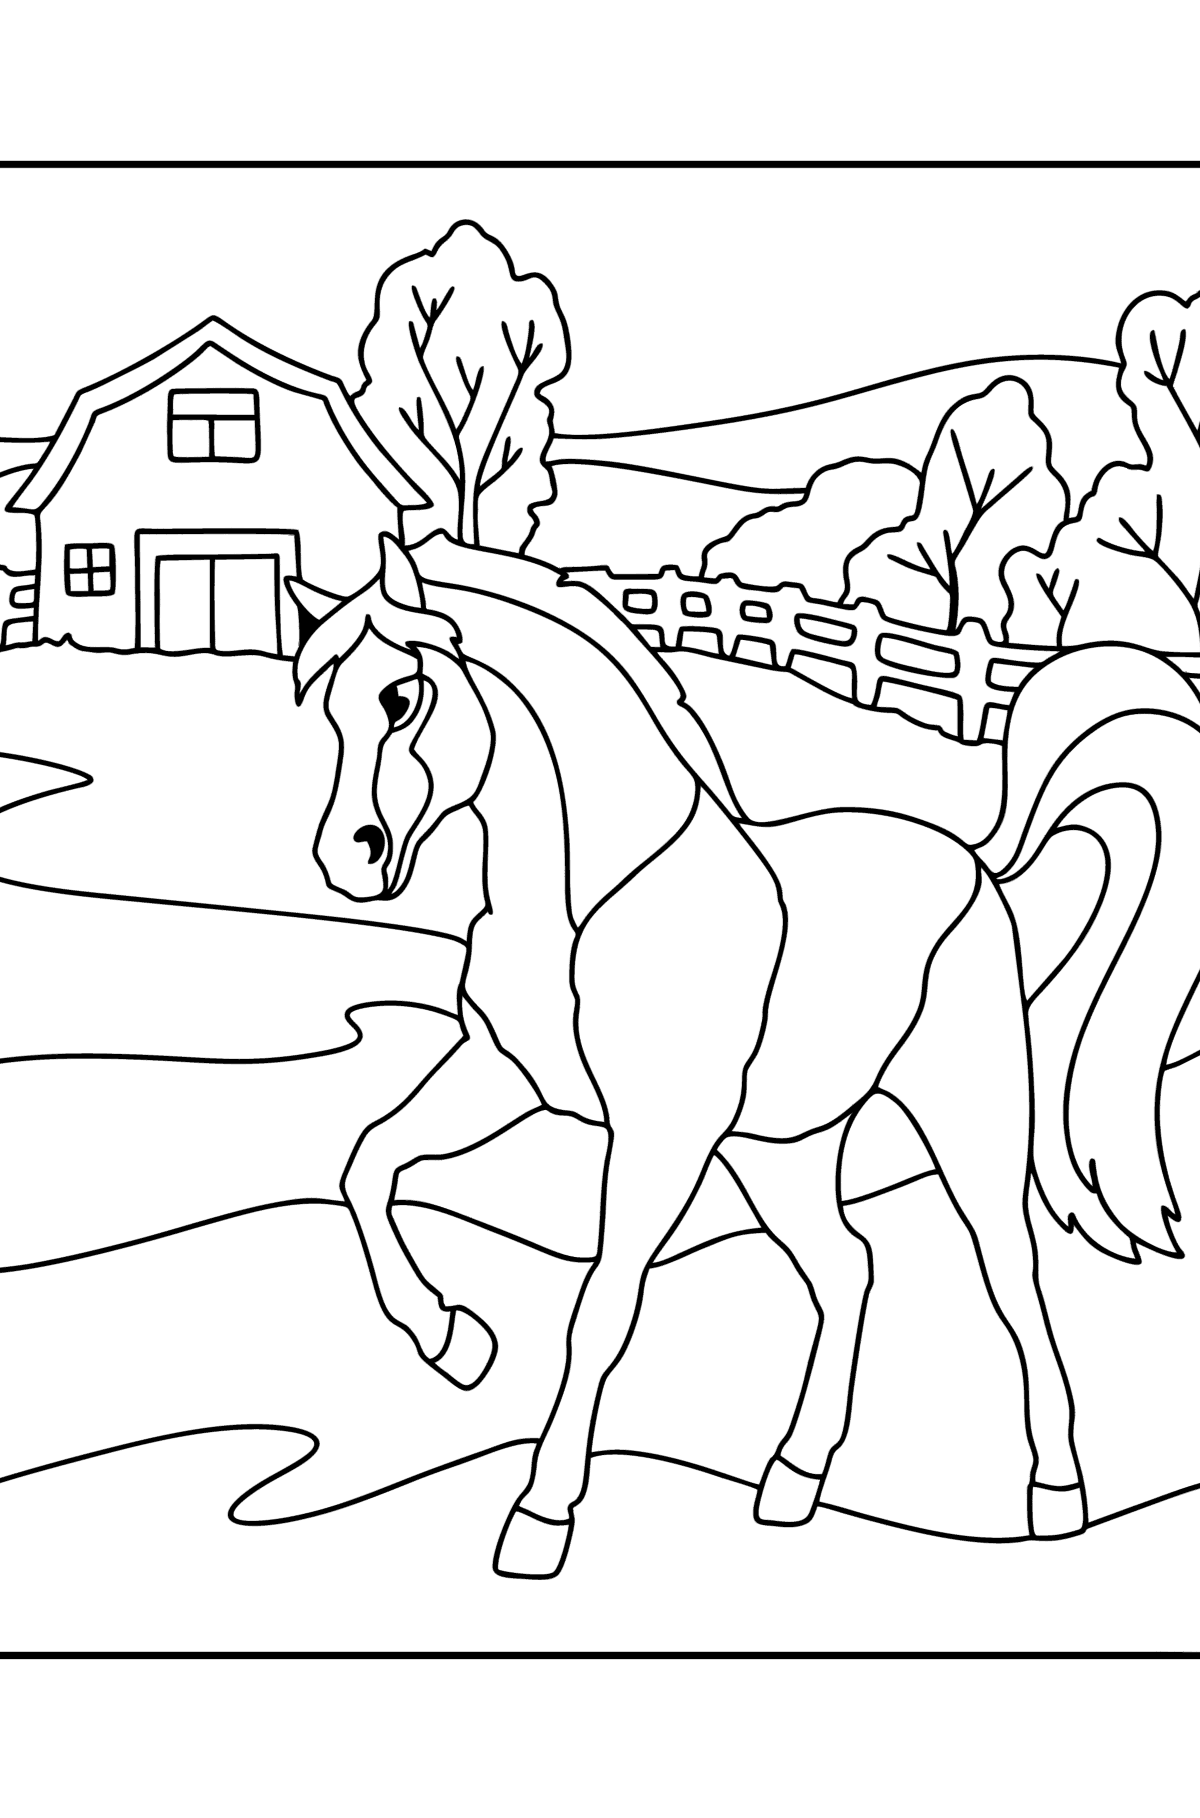 Tegning til fargelegging Hest på gården - Tegninger til fargelegging for barn